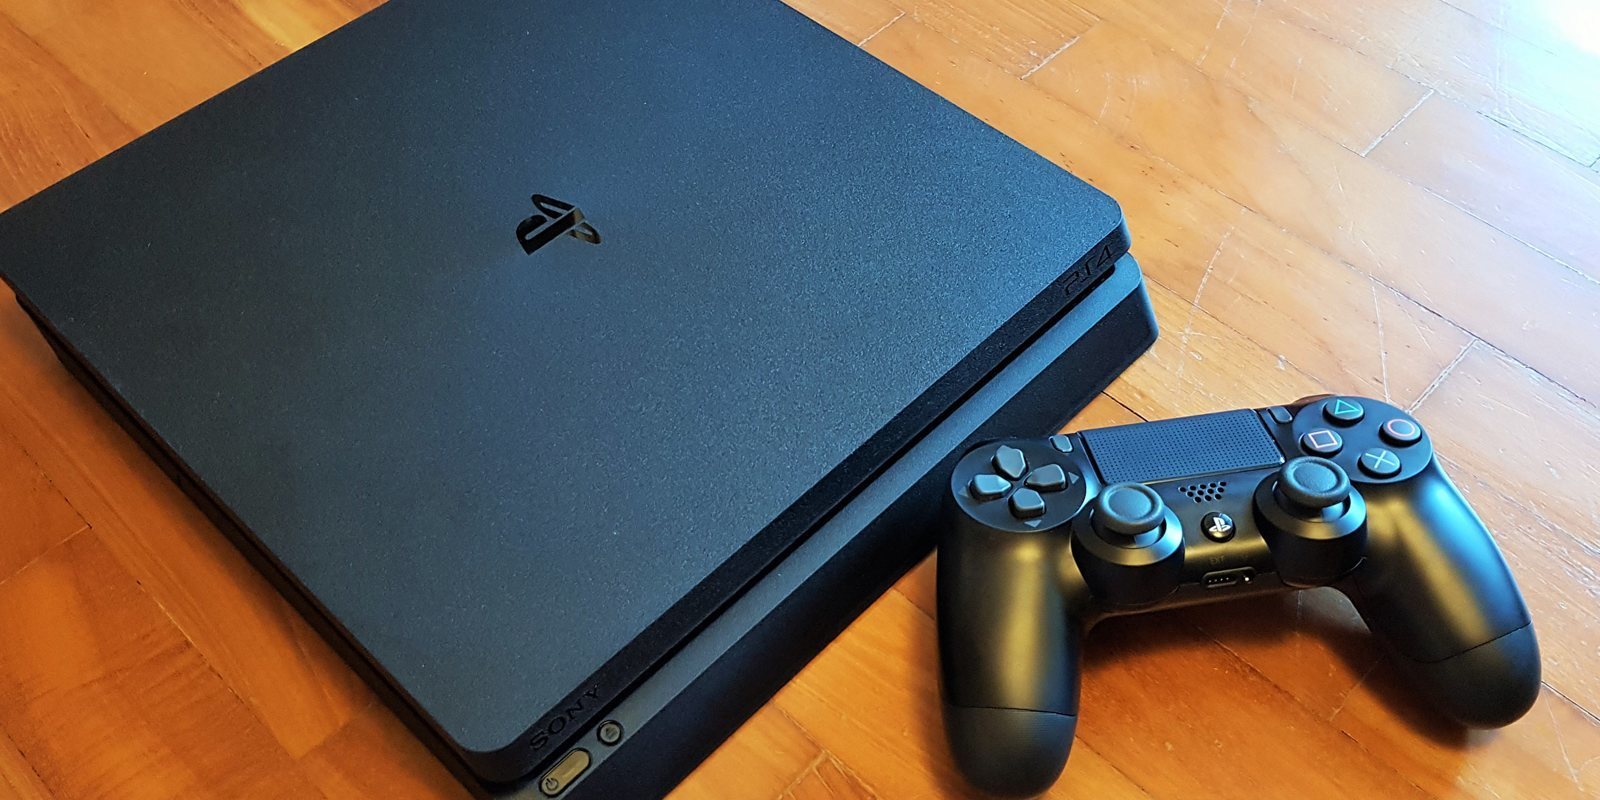 Michael Pachter espera una bajada de precio de PS4 antes del Black Friday